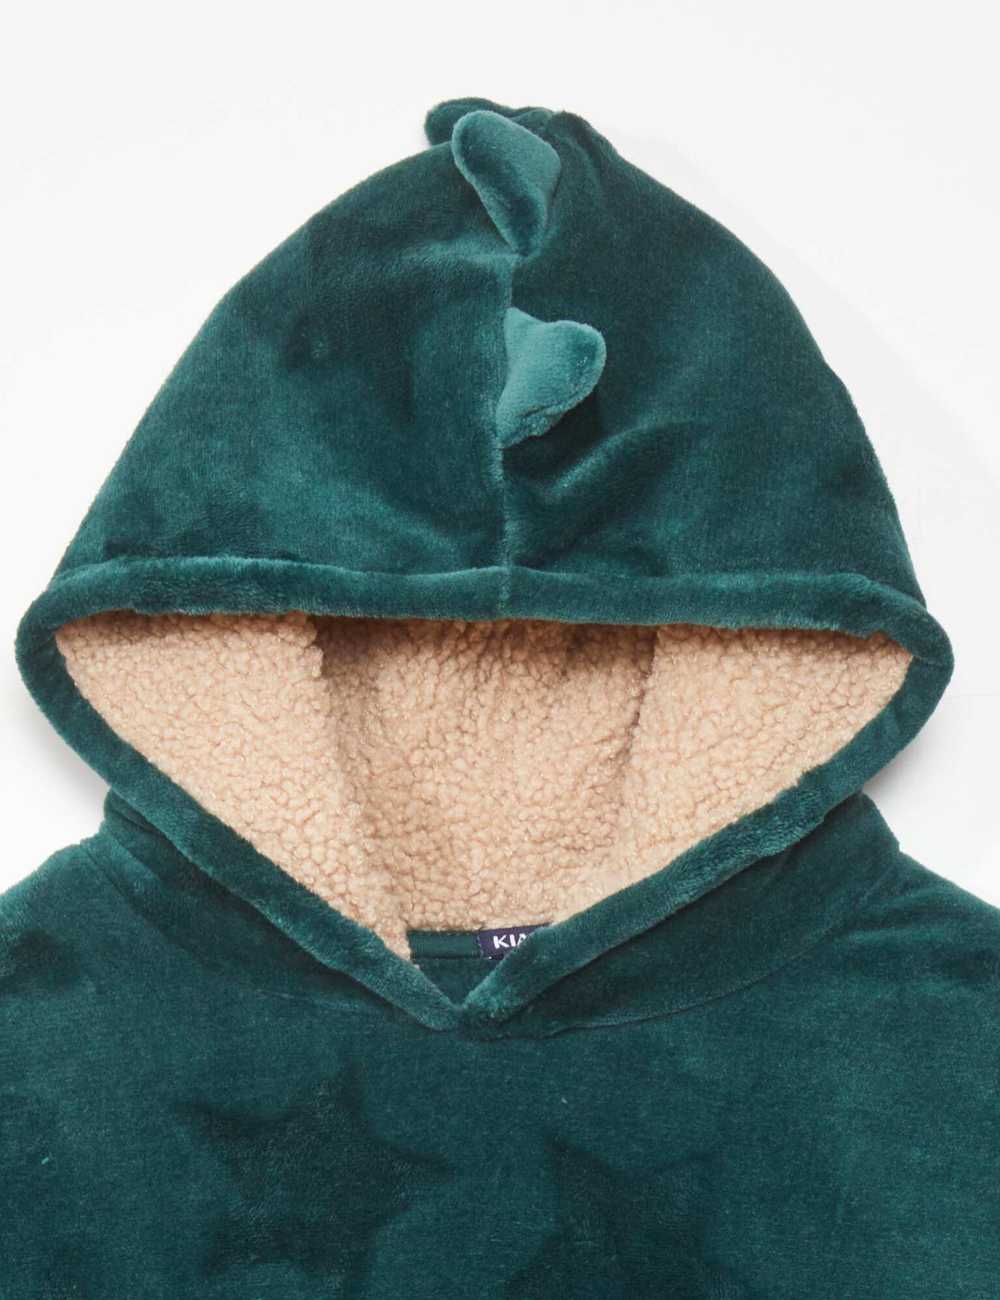 Buy Fleece hoodie Online in Dubai & the UAE